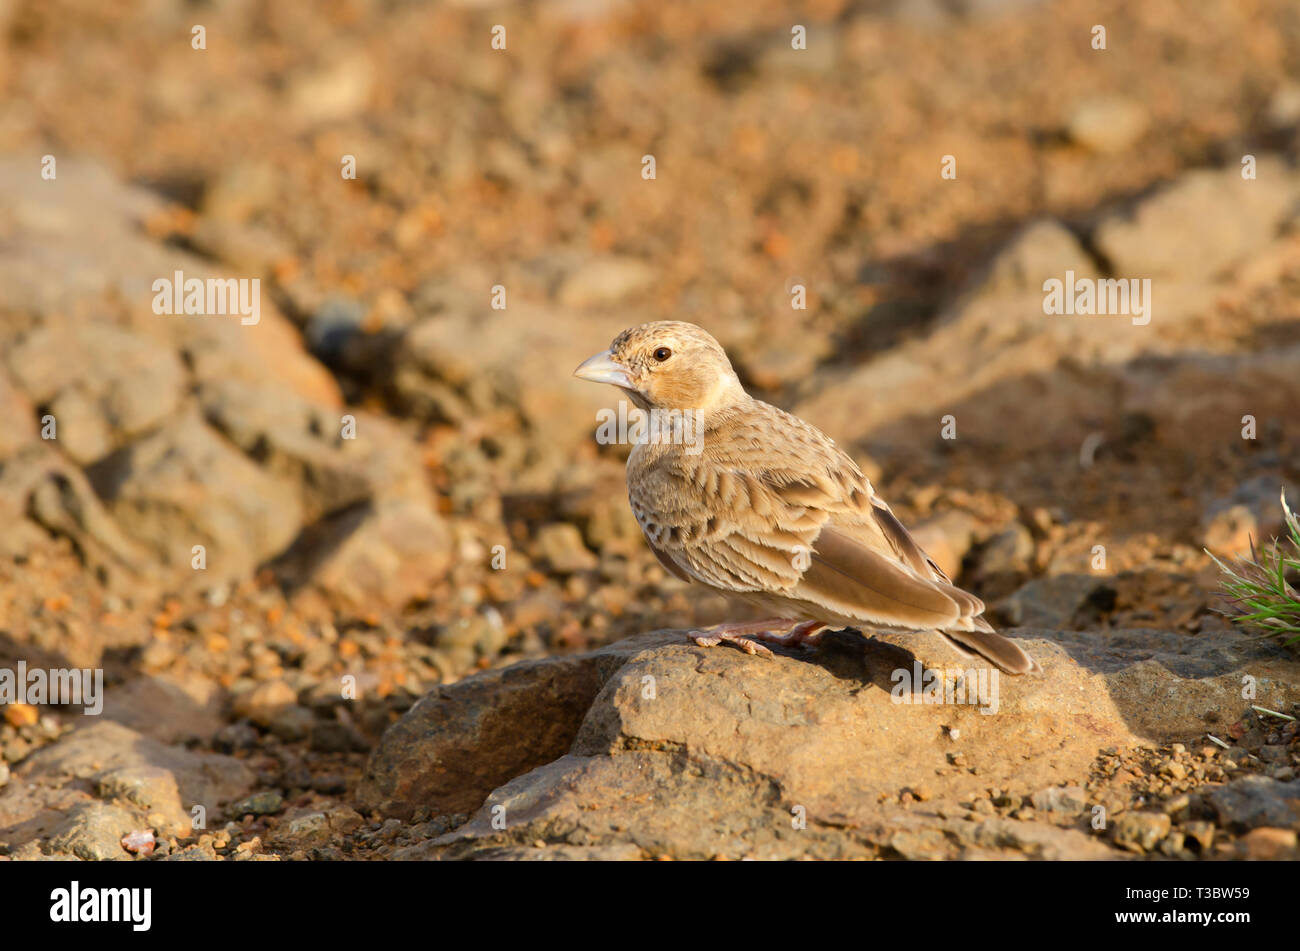 Lark a small ground-dwelling songbird, Pune, Maharashtra, India. Stock Photo